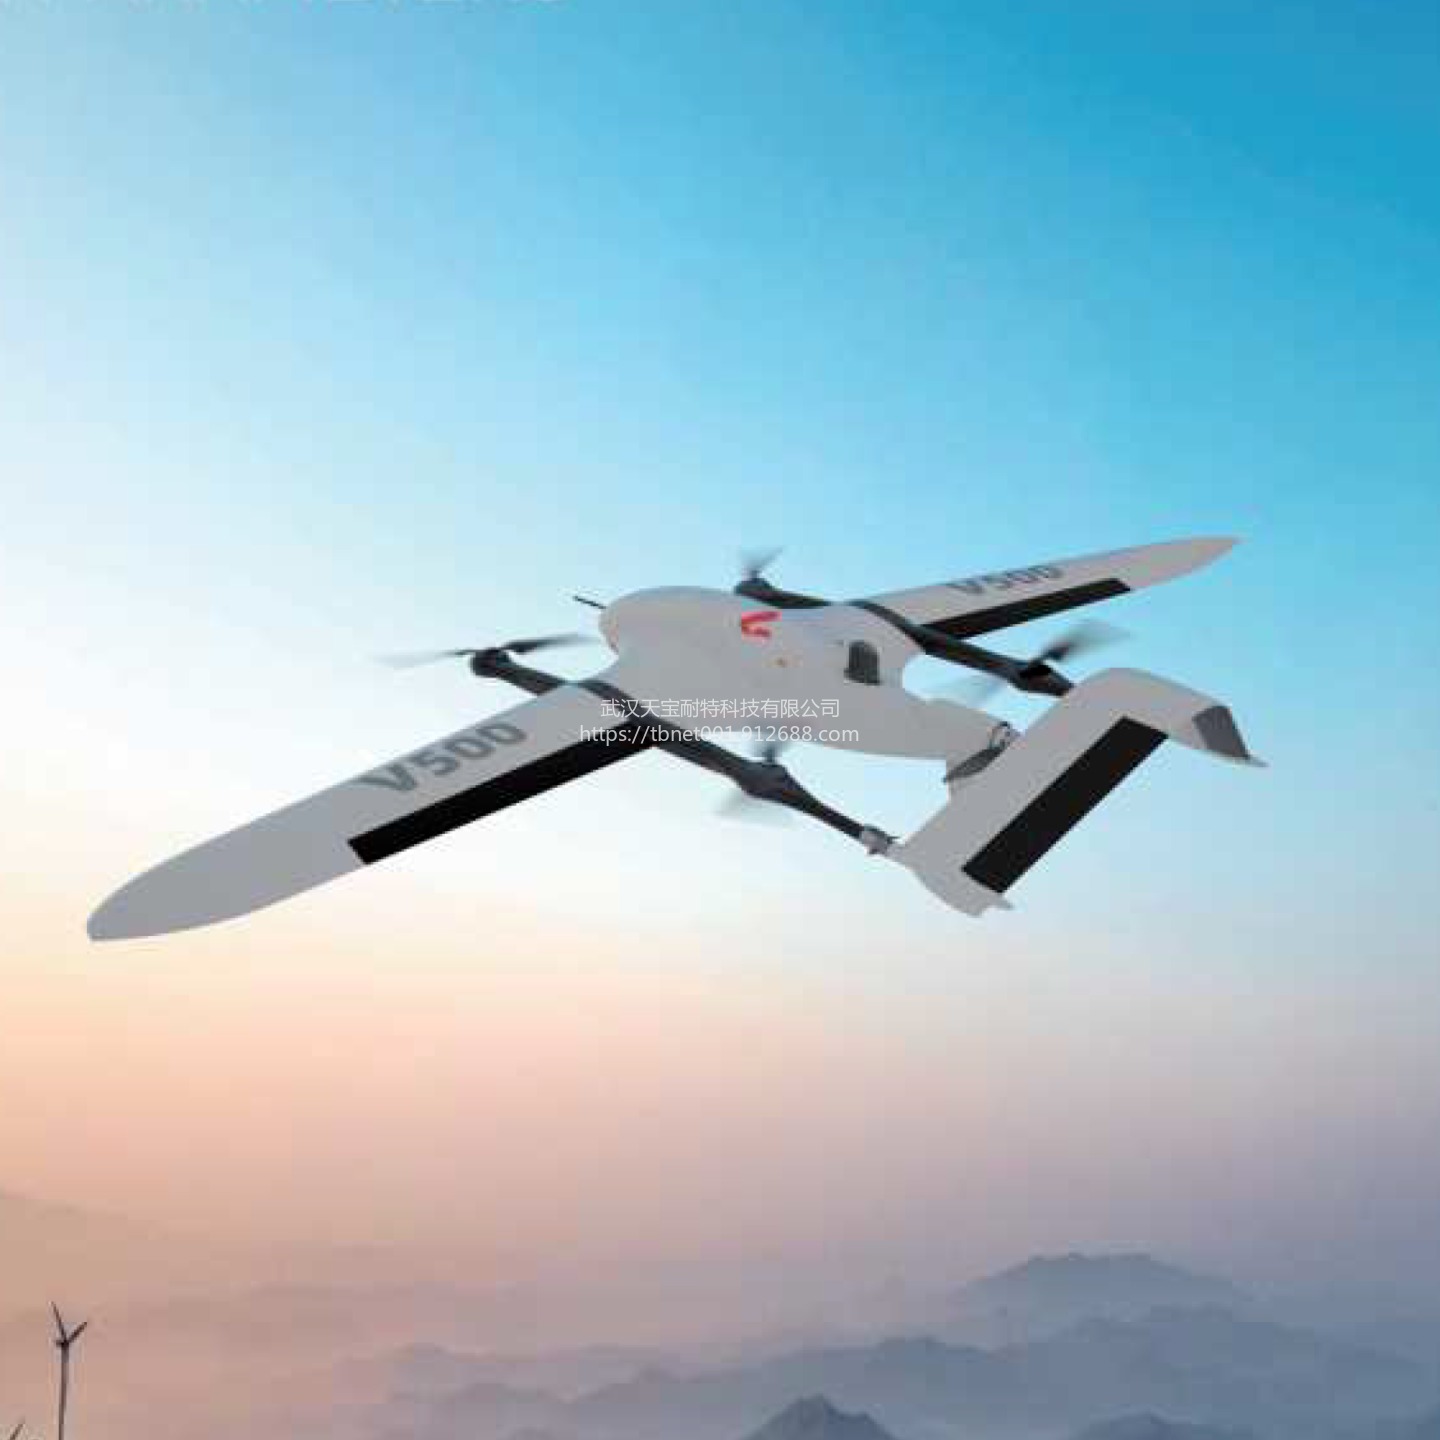 销售智能遥感UAV航测系统 V500 免像控成图 山地勘探立体测图